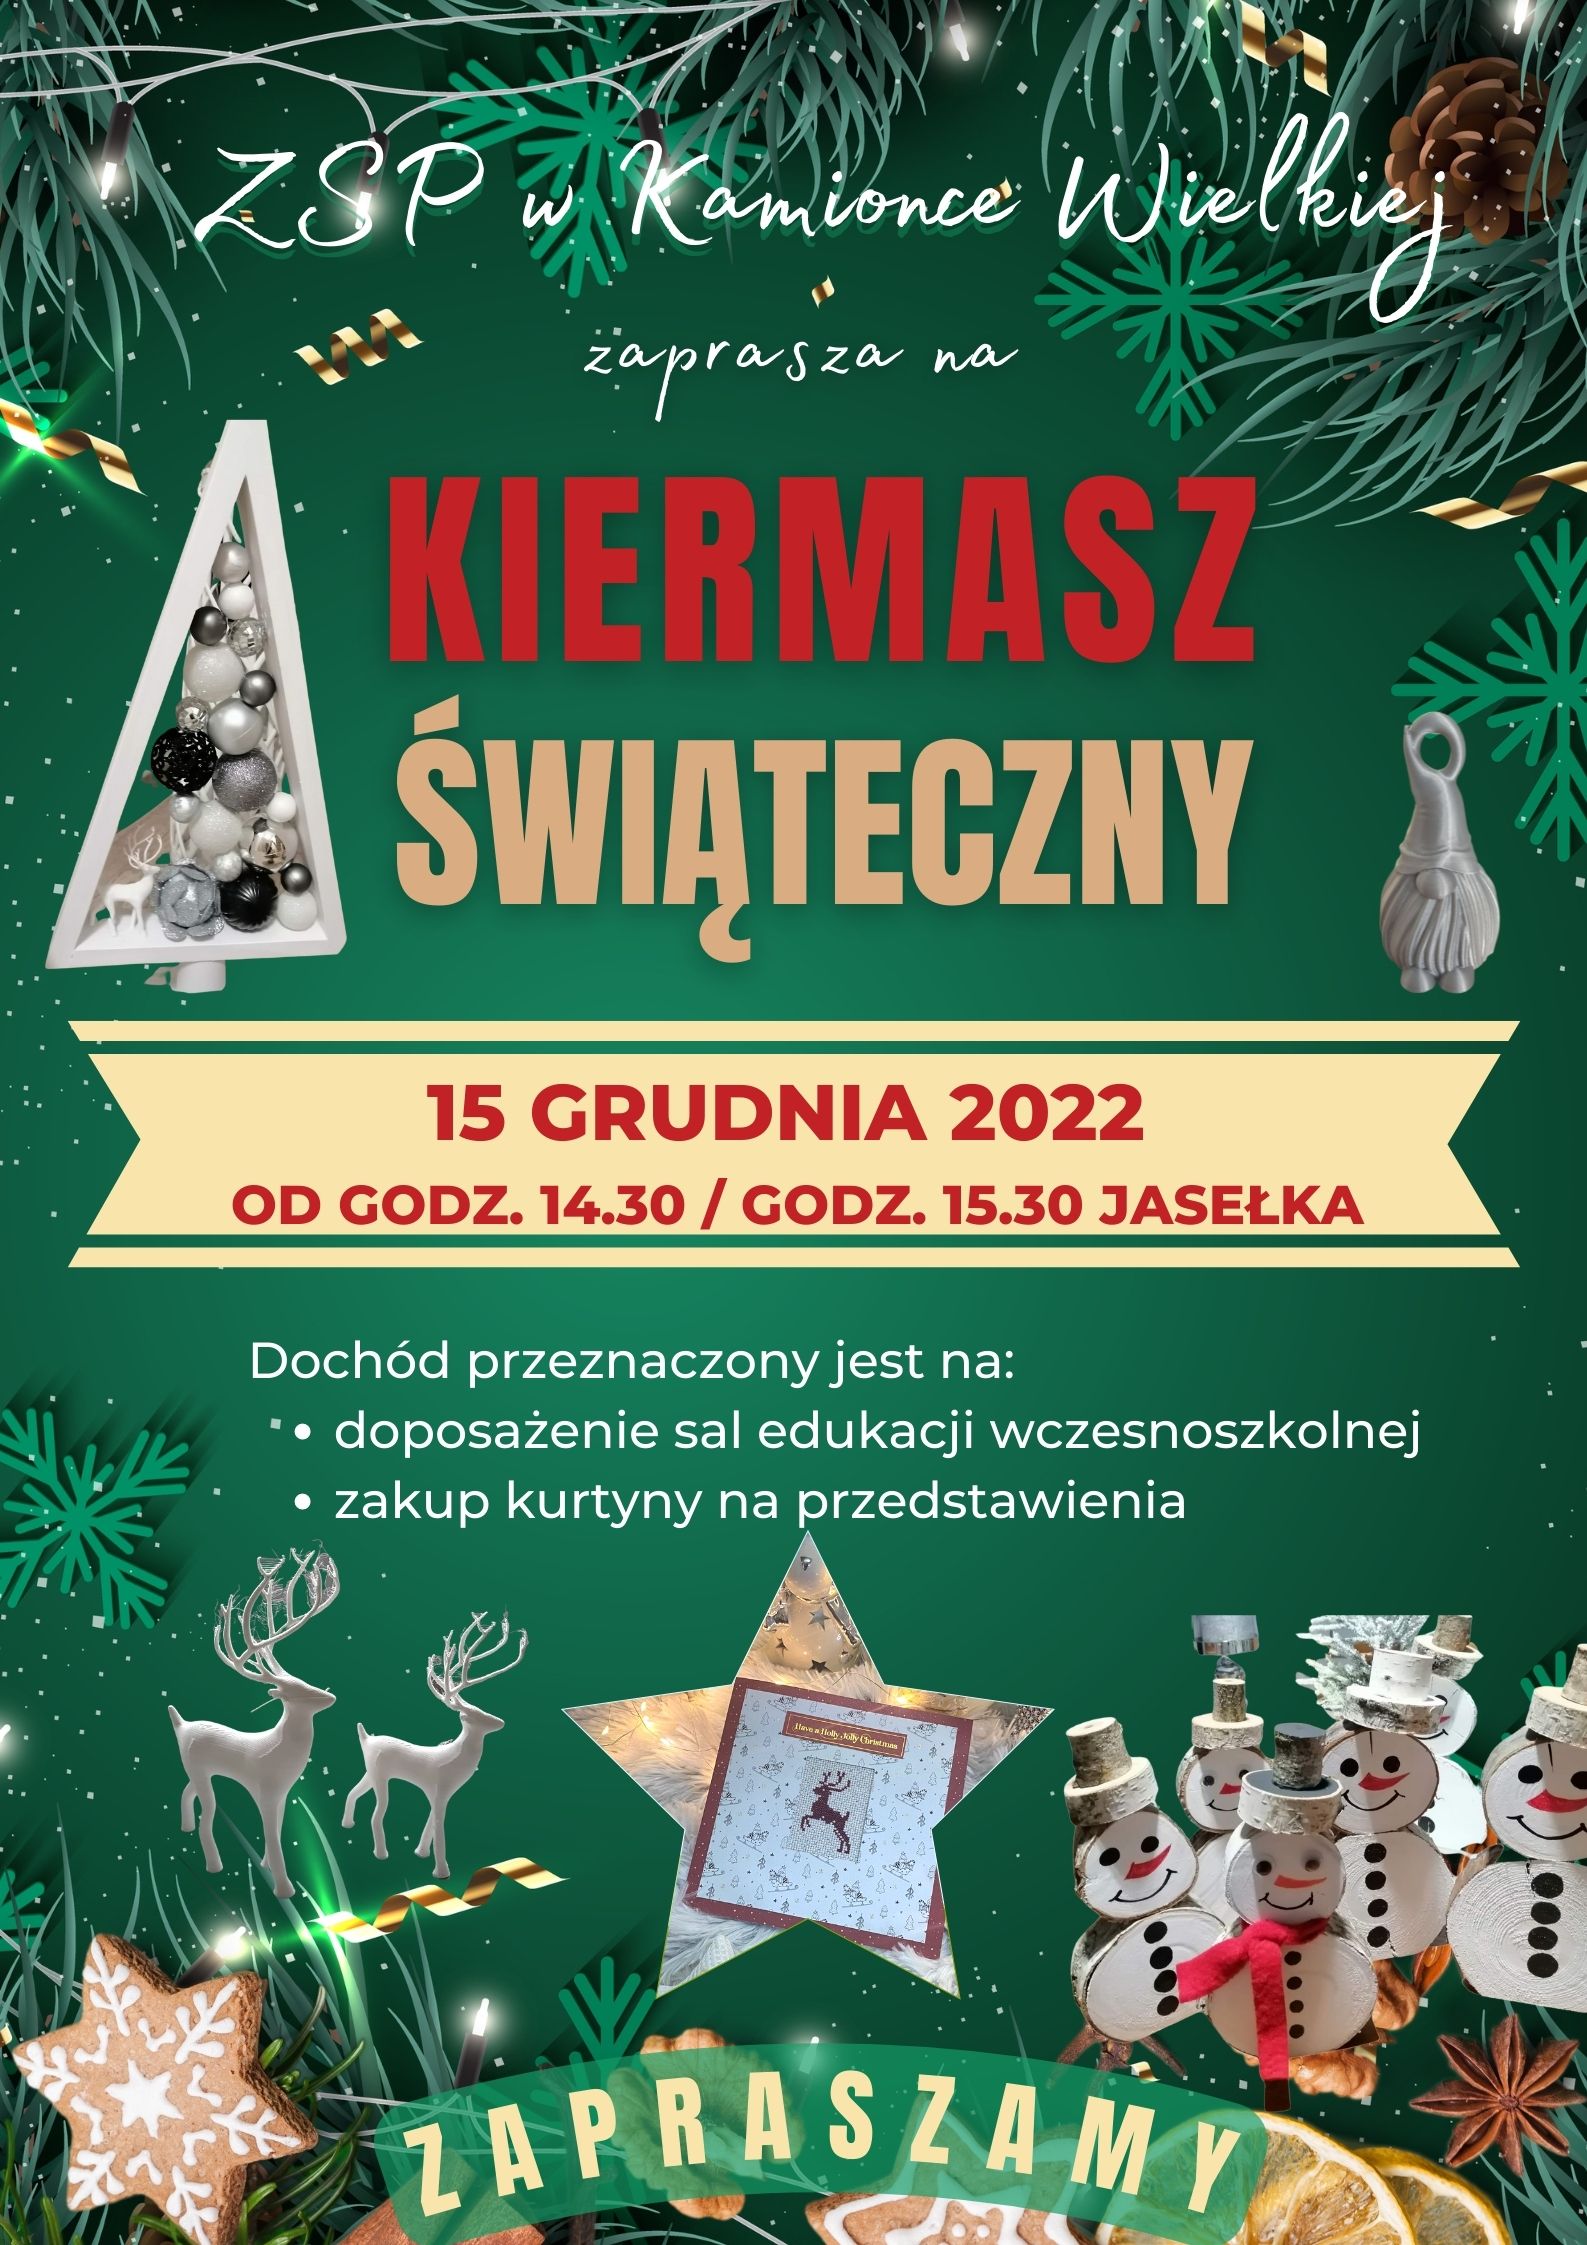 Kiermasz Świąteczny - 15 grudnia 2022